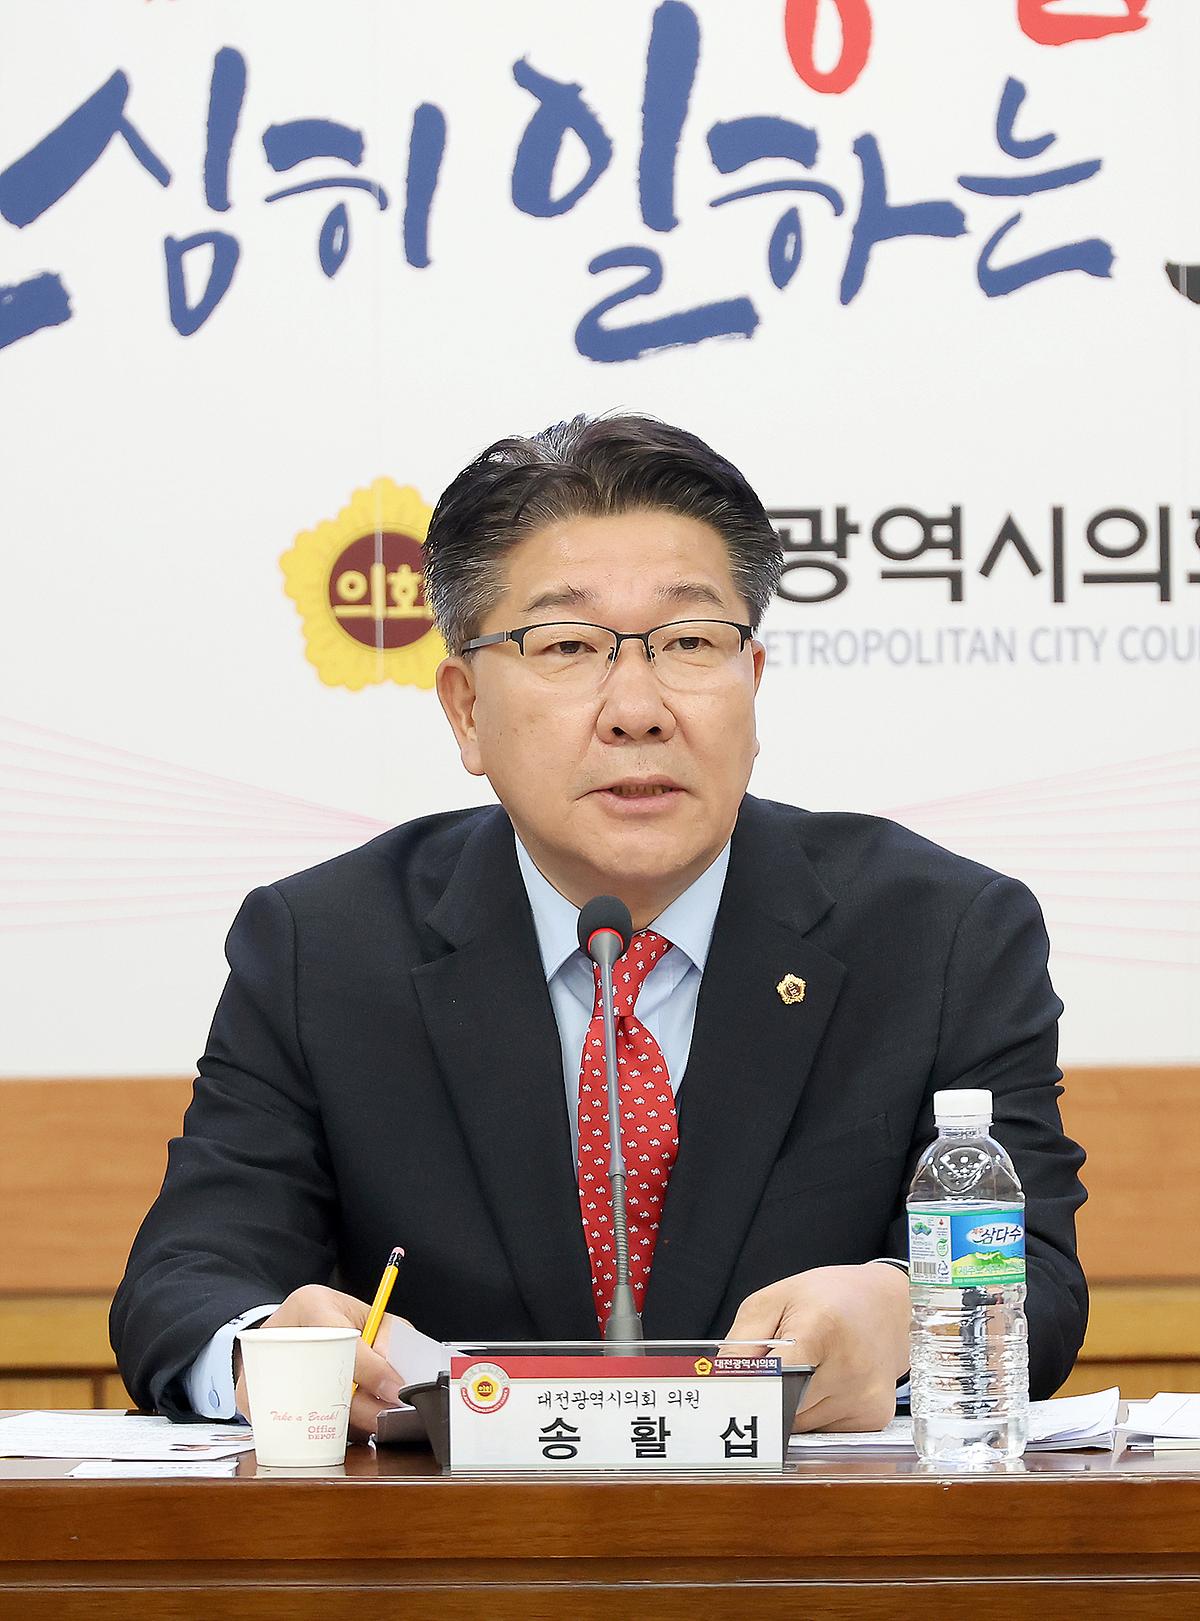 대전시-금산군 통합 논의 토론회 [ 2024-02-23 ]